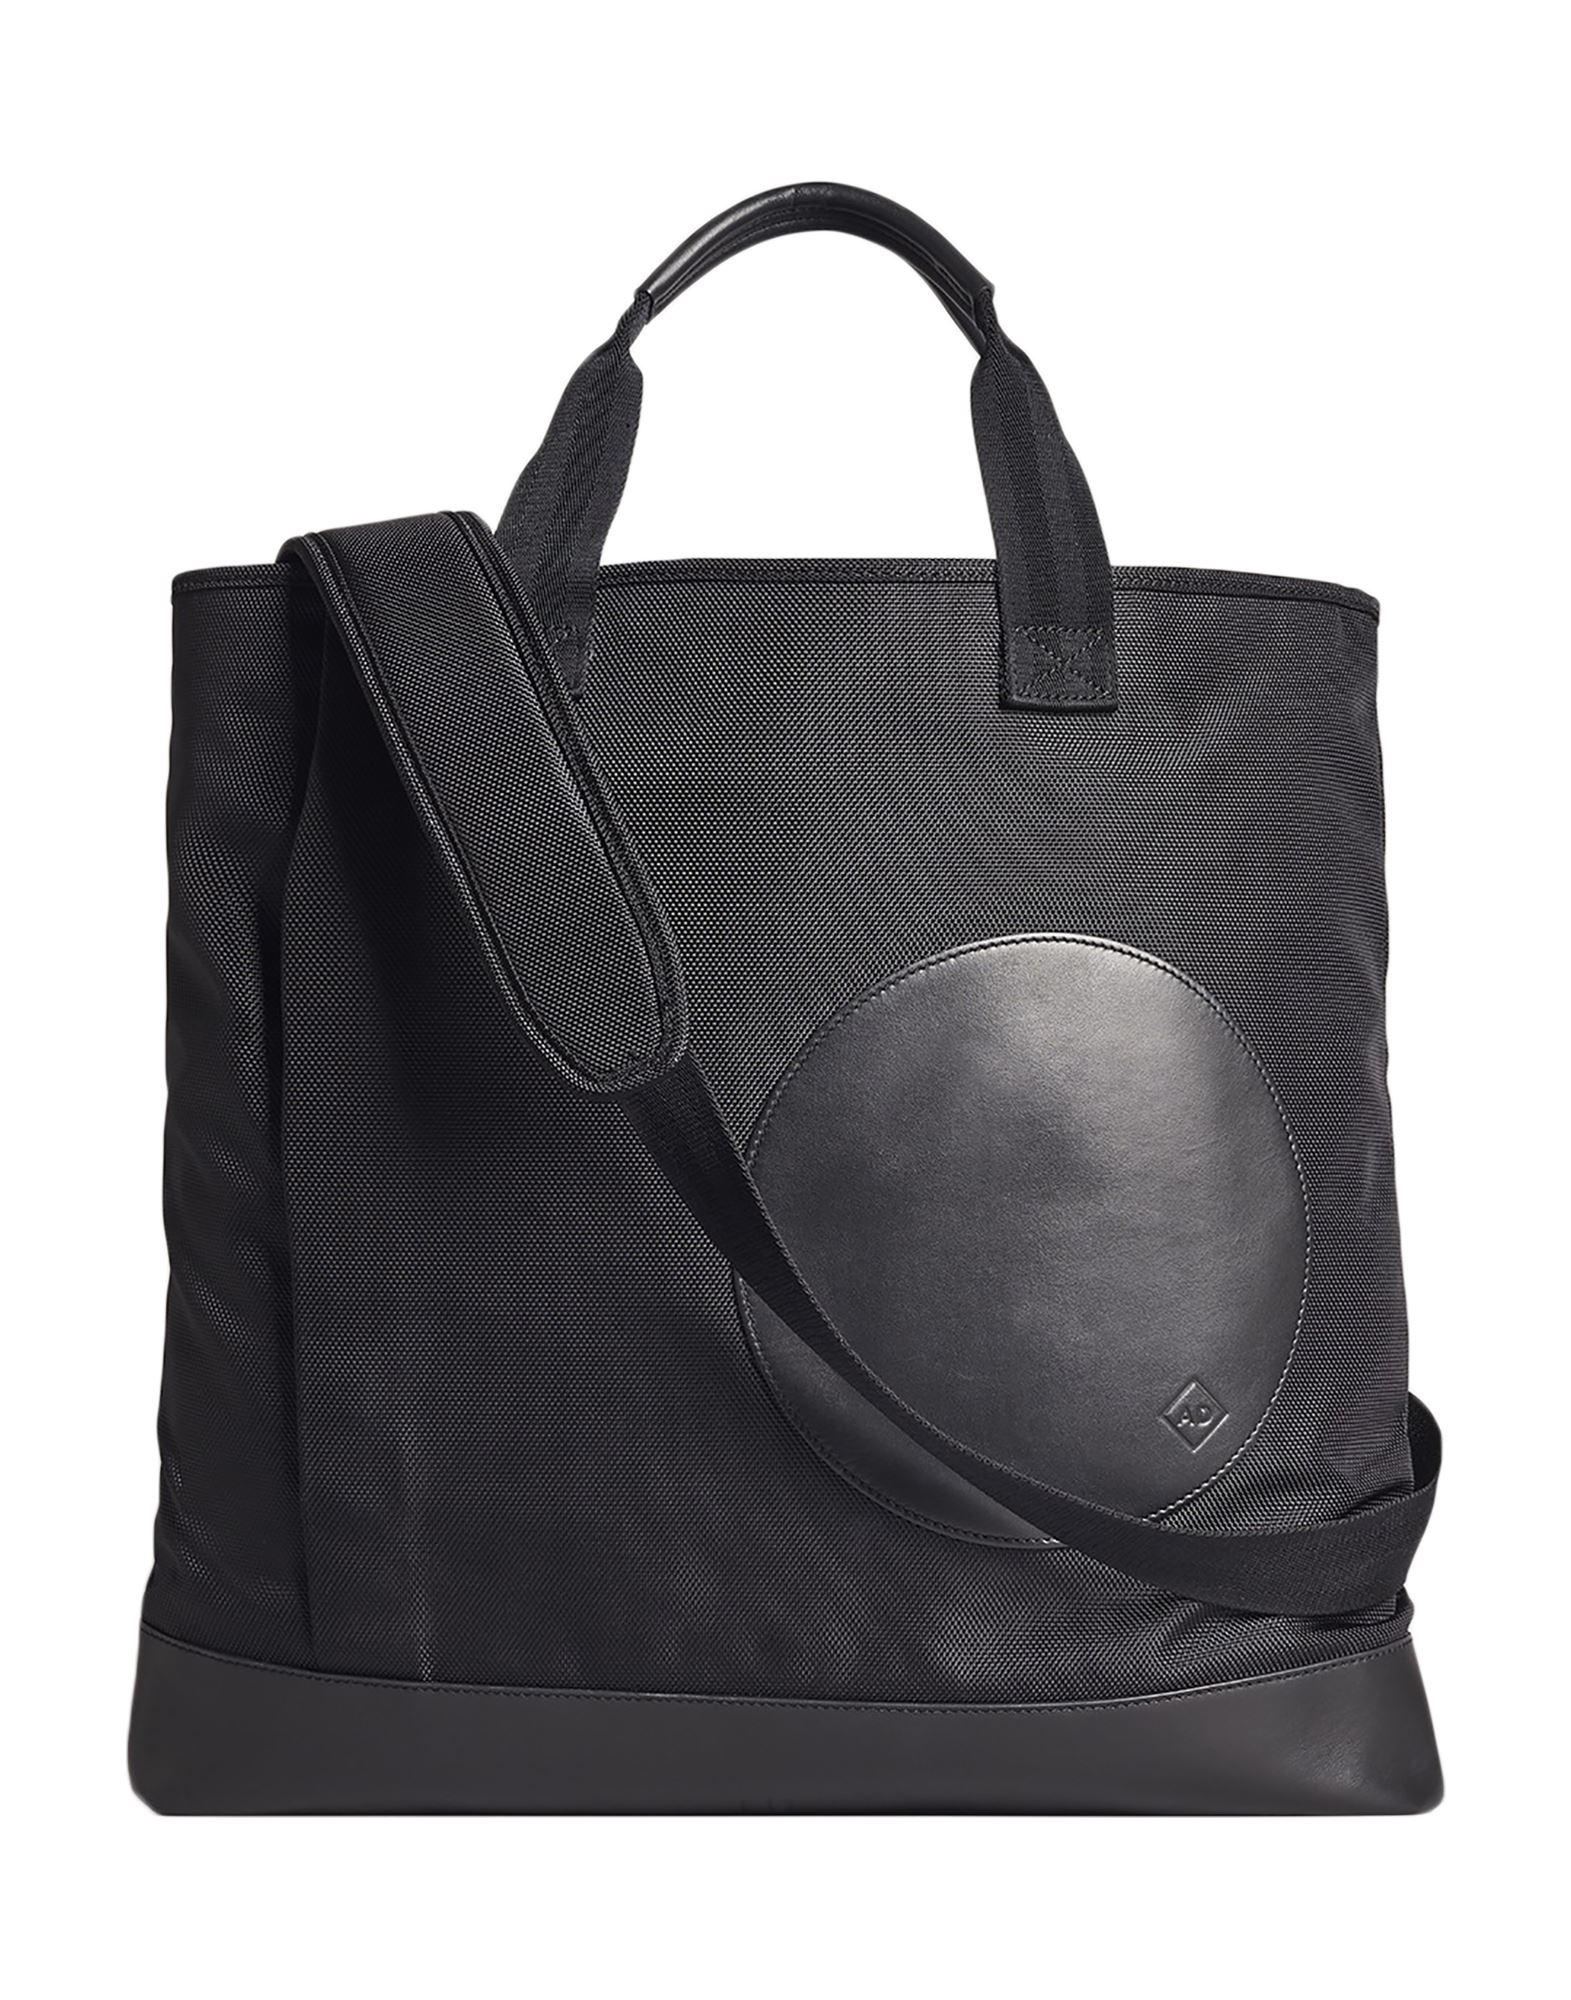 Dunhill Handbags In Black